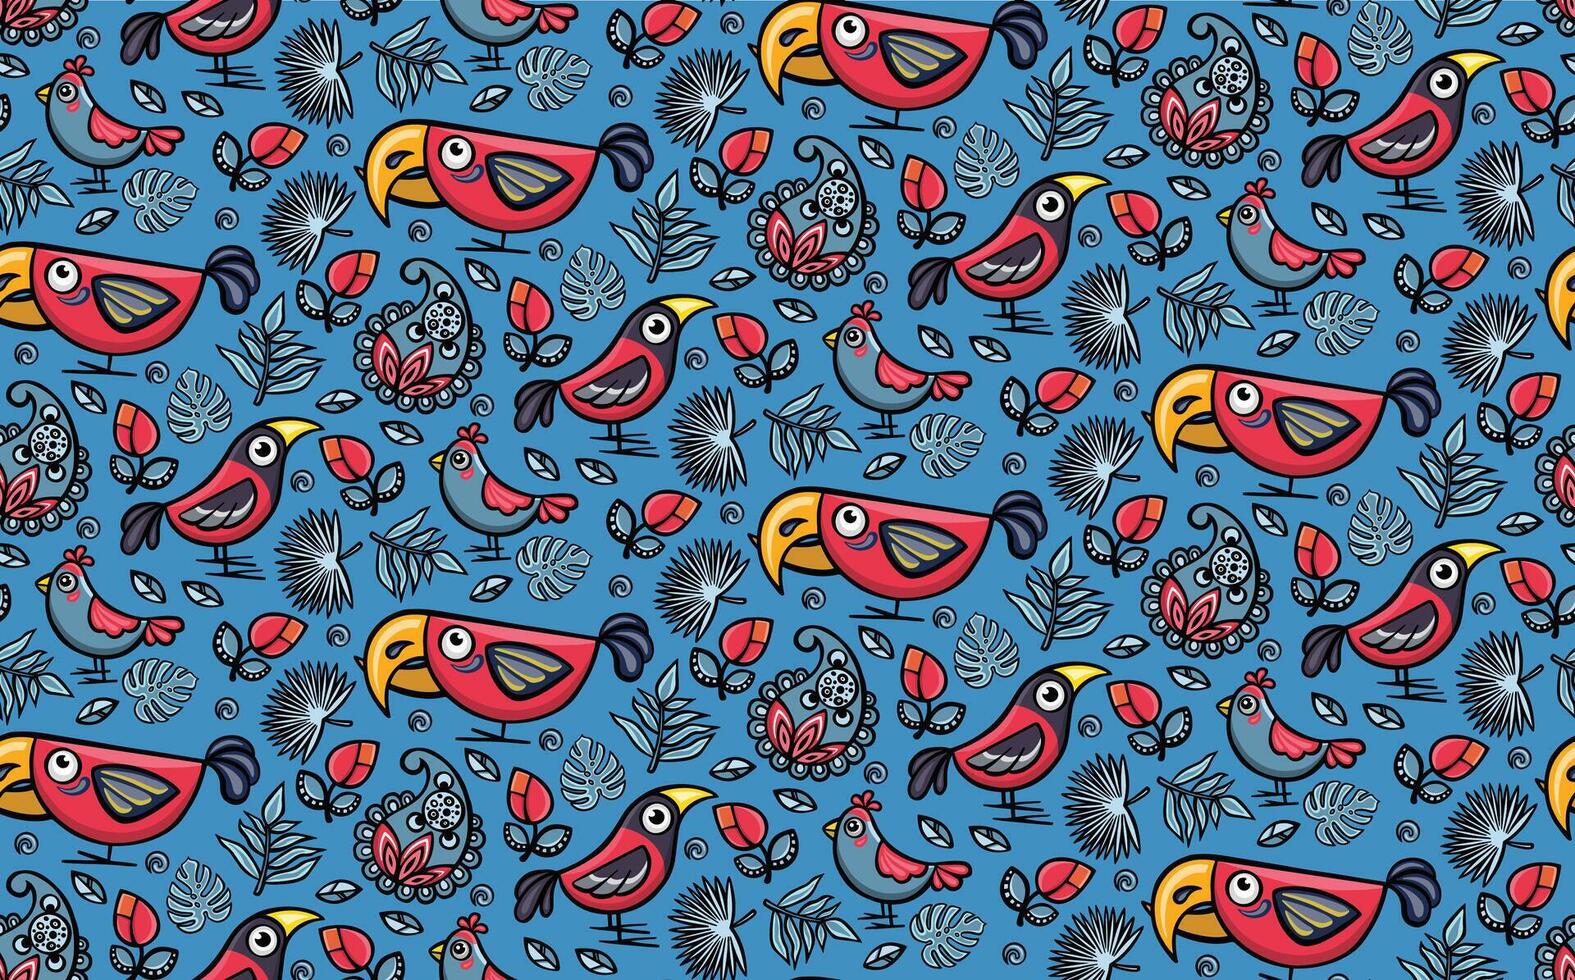 Crossbill birds wallpaper seamless pattern, illustration hand drawn vector